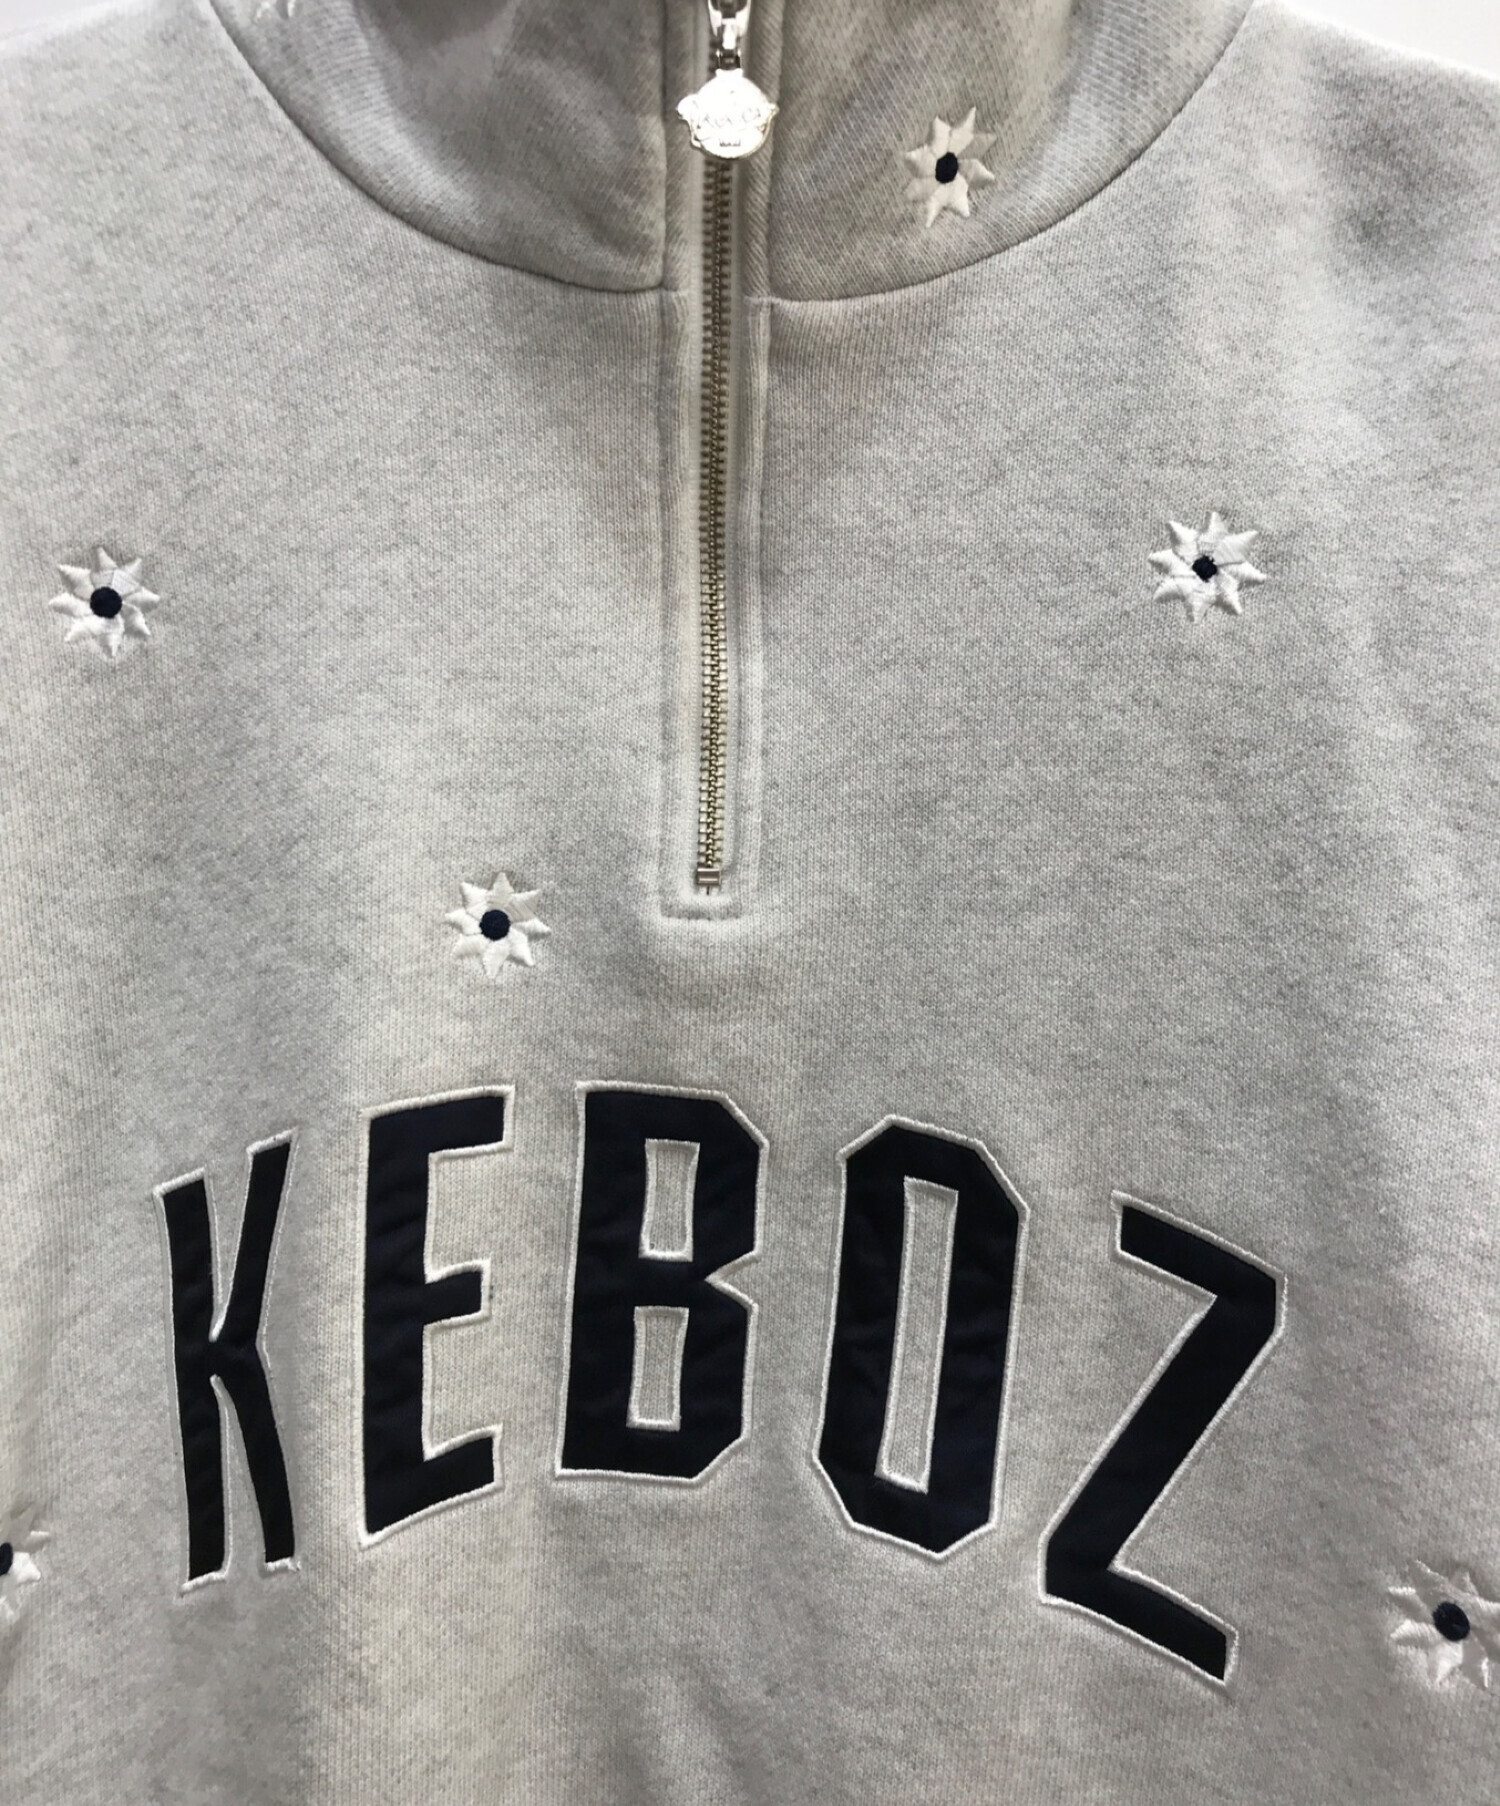 中古・古着通販】KEBOZ (ケボズ) nick gear (ニックギア) FREAK'S